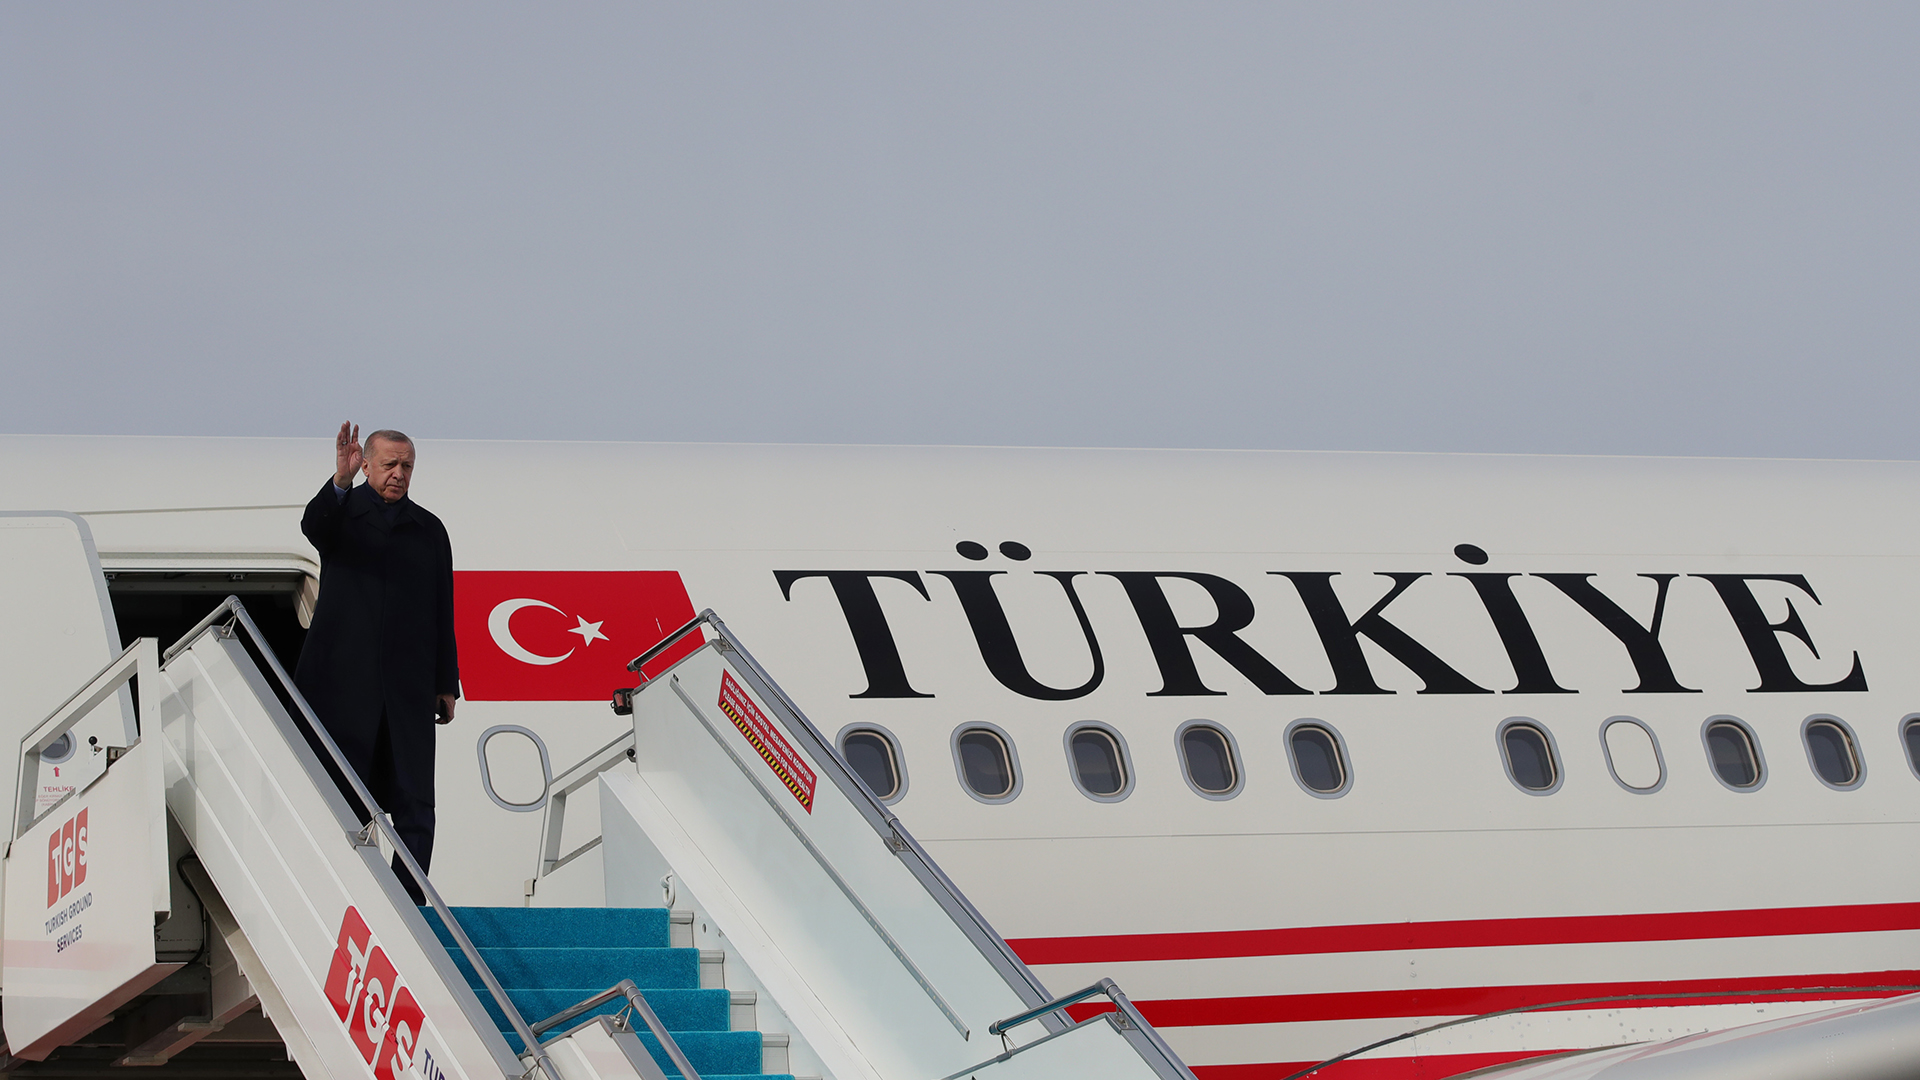 Turki ingin menyebut dirinya berbeda: Dari “Turki” menjadi “Türkiye”